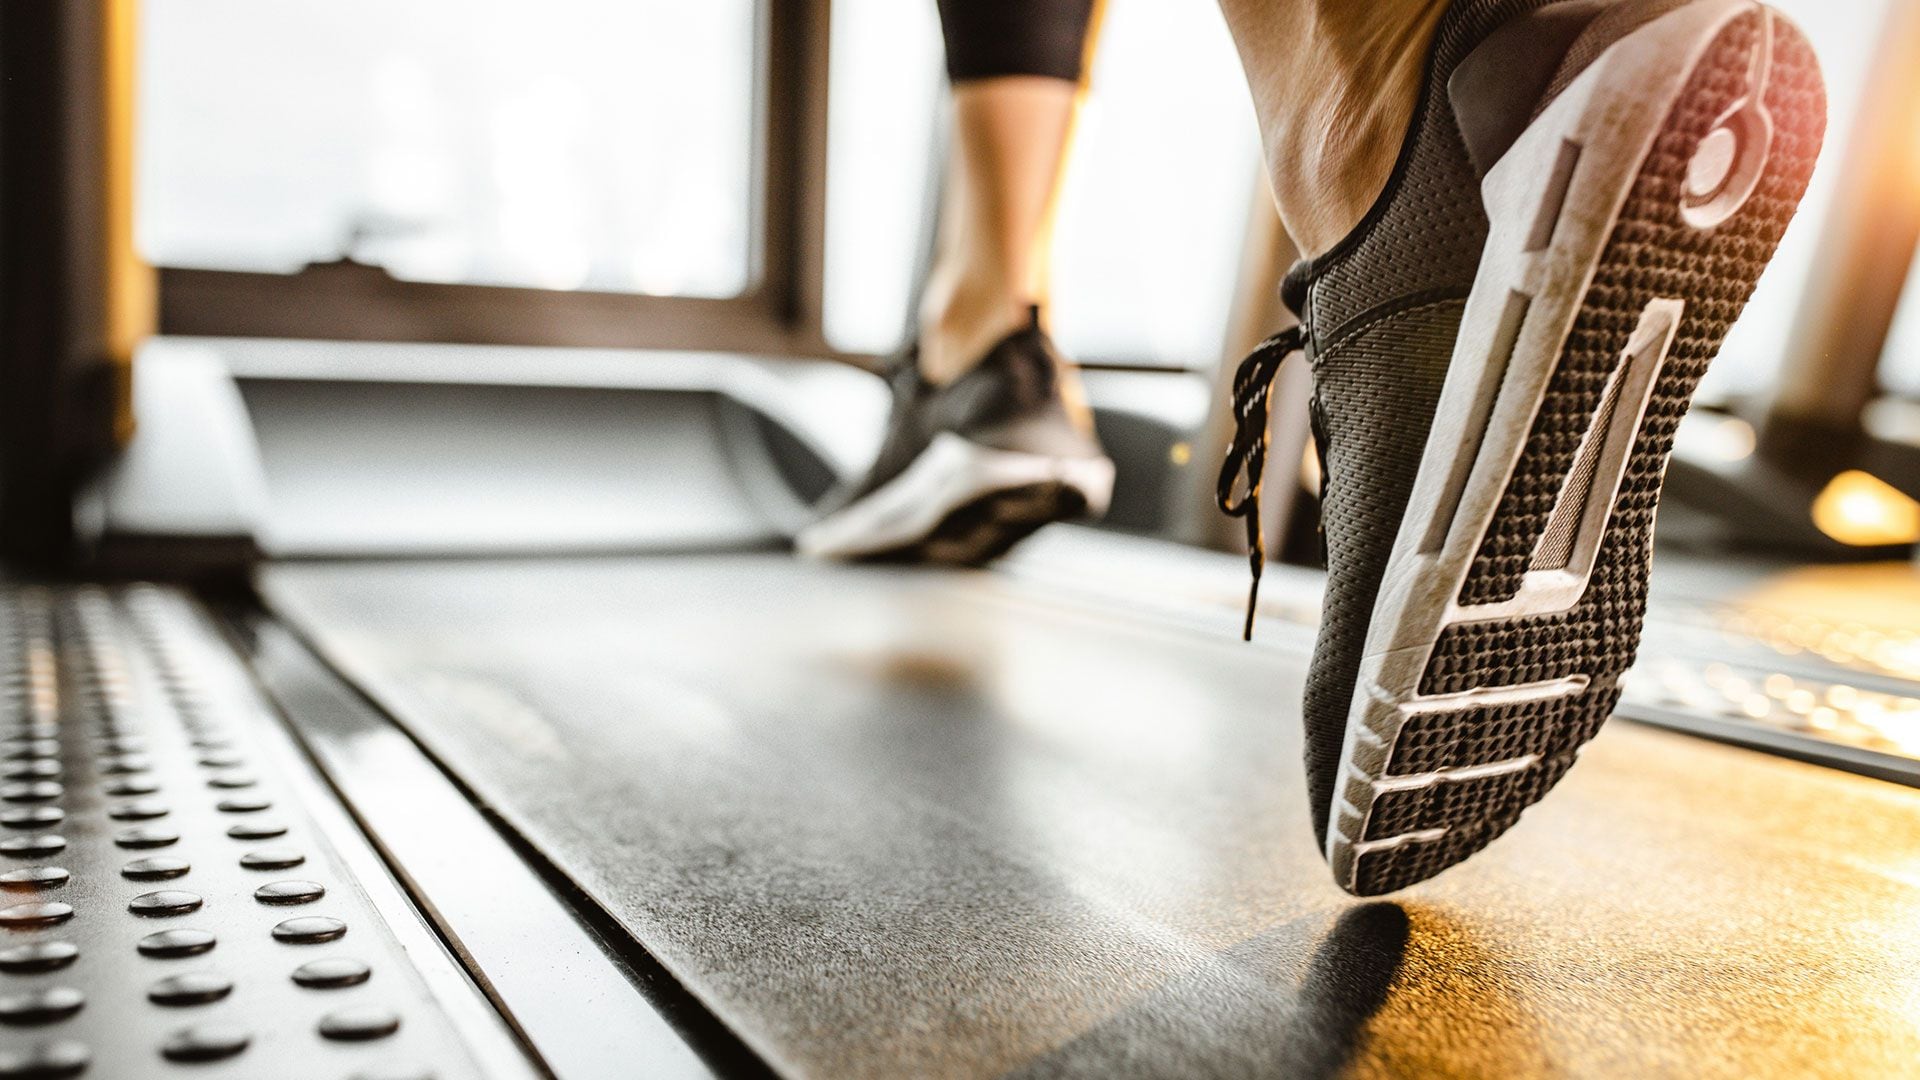 La actividad física intermitente y vigorosa implica ejercicios breves y enérgicos como caminar rápidamente, subir escaleras o correr para alcanzar el transporte público (Getty)